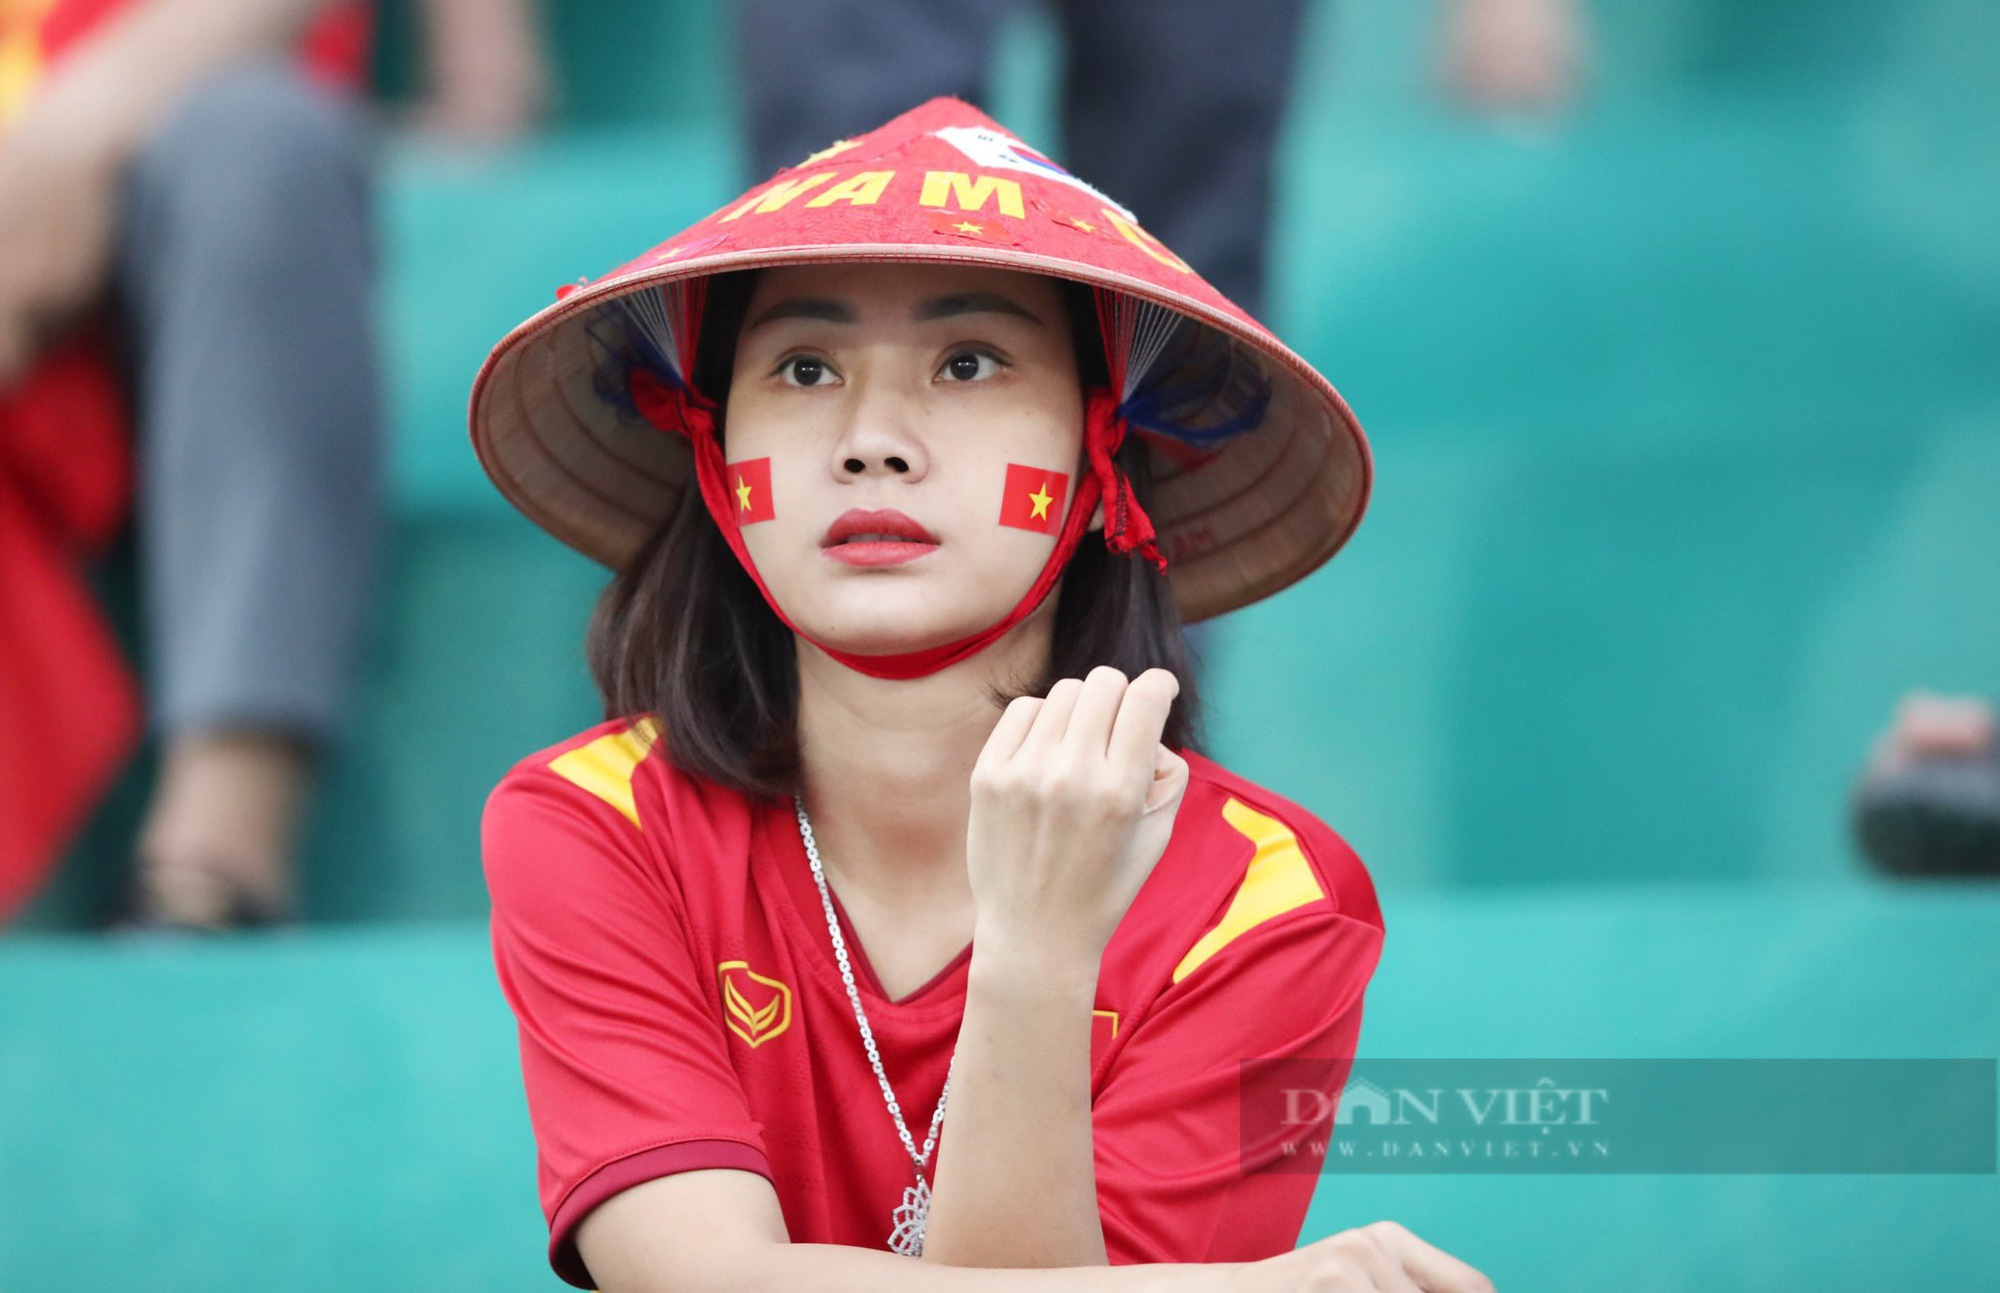 Dàn hot girl xinh đẹp xuất hiện trên khán đài ăn mừng khi U23 Việt Nam chiến thắng - Ảnh 9.